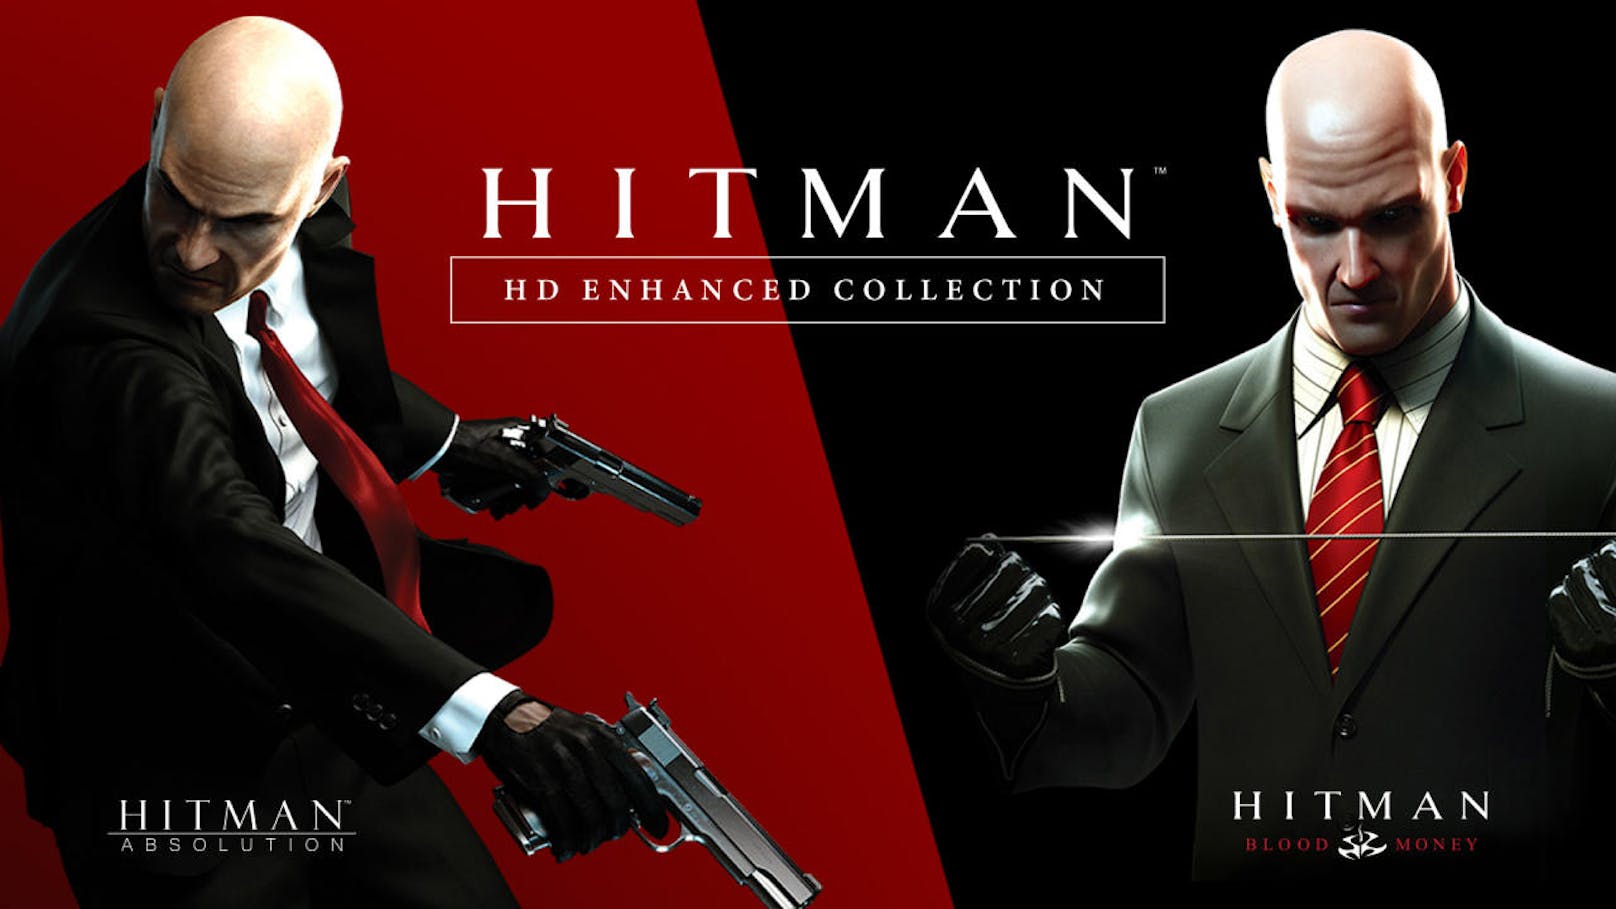 <b>08. Jänner 2019:</b> Warner Bros. Interactive Entertainment und IO Interactive haben die Hitman HD Enhanced Collection angekündigt. Enthalten sind die zwei klassischen Hitman-Titel Hitman: Blood Money und Hitman: Absolution. Beide Titel können in 4K-Auflösung bei 60 fps gespielt werden und bieten zahlreiche Verbesserungen, die beide Titel auch im Jahr 2019 glänzen lassen. Die Hitman HD Enhanced Collection ist ab dem 11. Jänner 2019 für PlayStation 4 und Xbox One erhältlich.